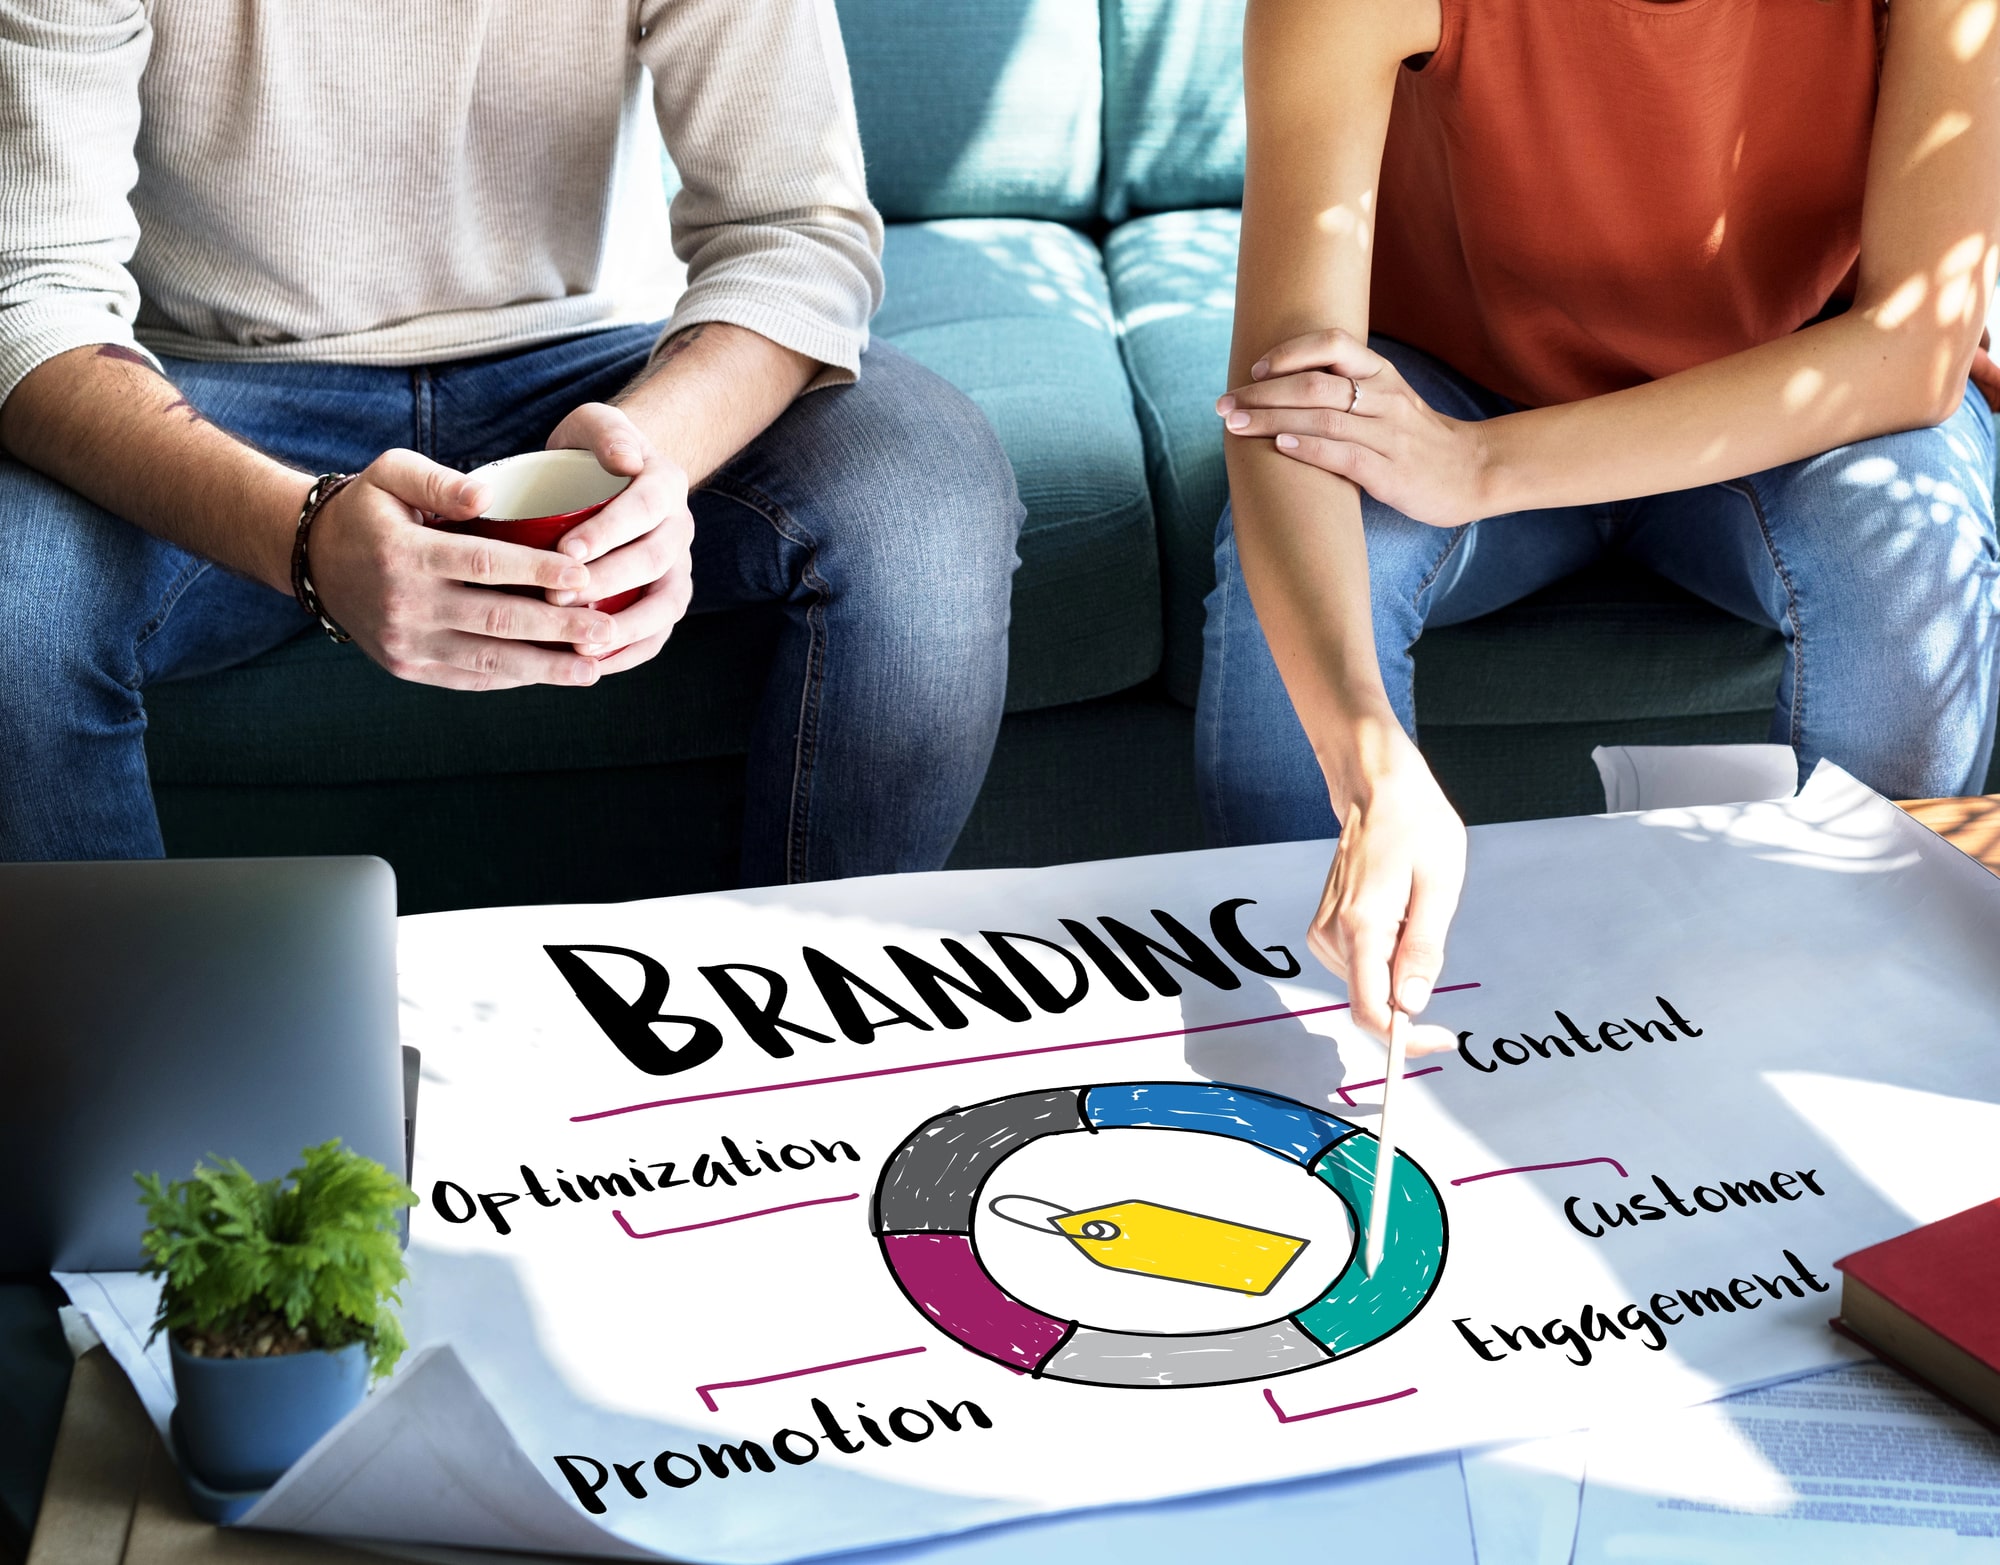 Image de marque et Branding : Les Meilleures Pratiques | Agence Boumgrafik